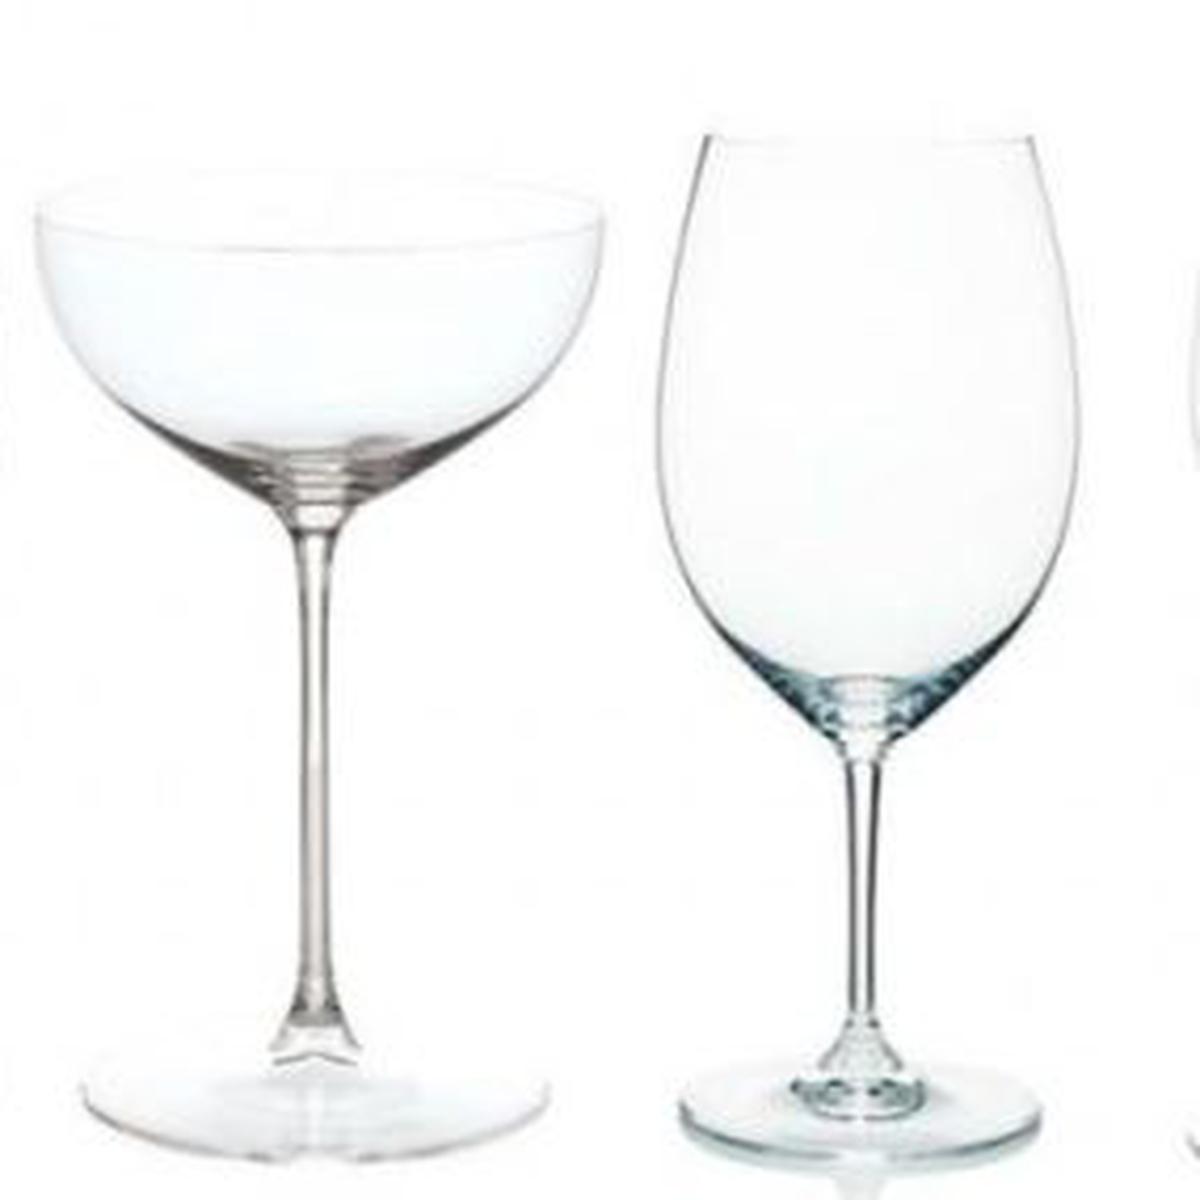 Cómo diferenciar y usar una copa según la bebida que se sirve en ella -  Dkristal